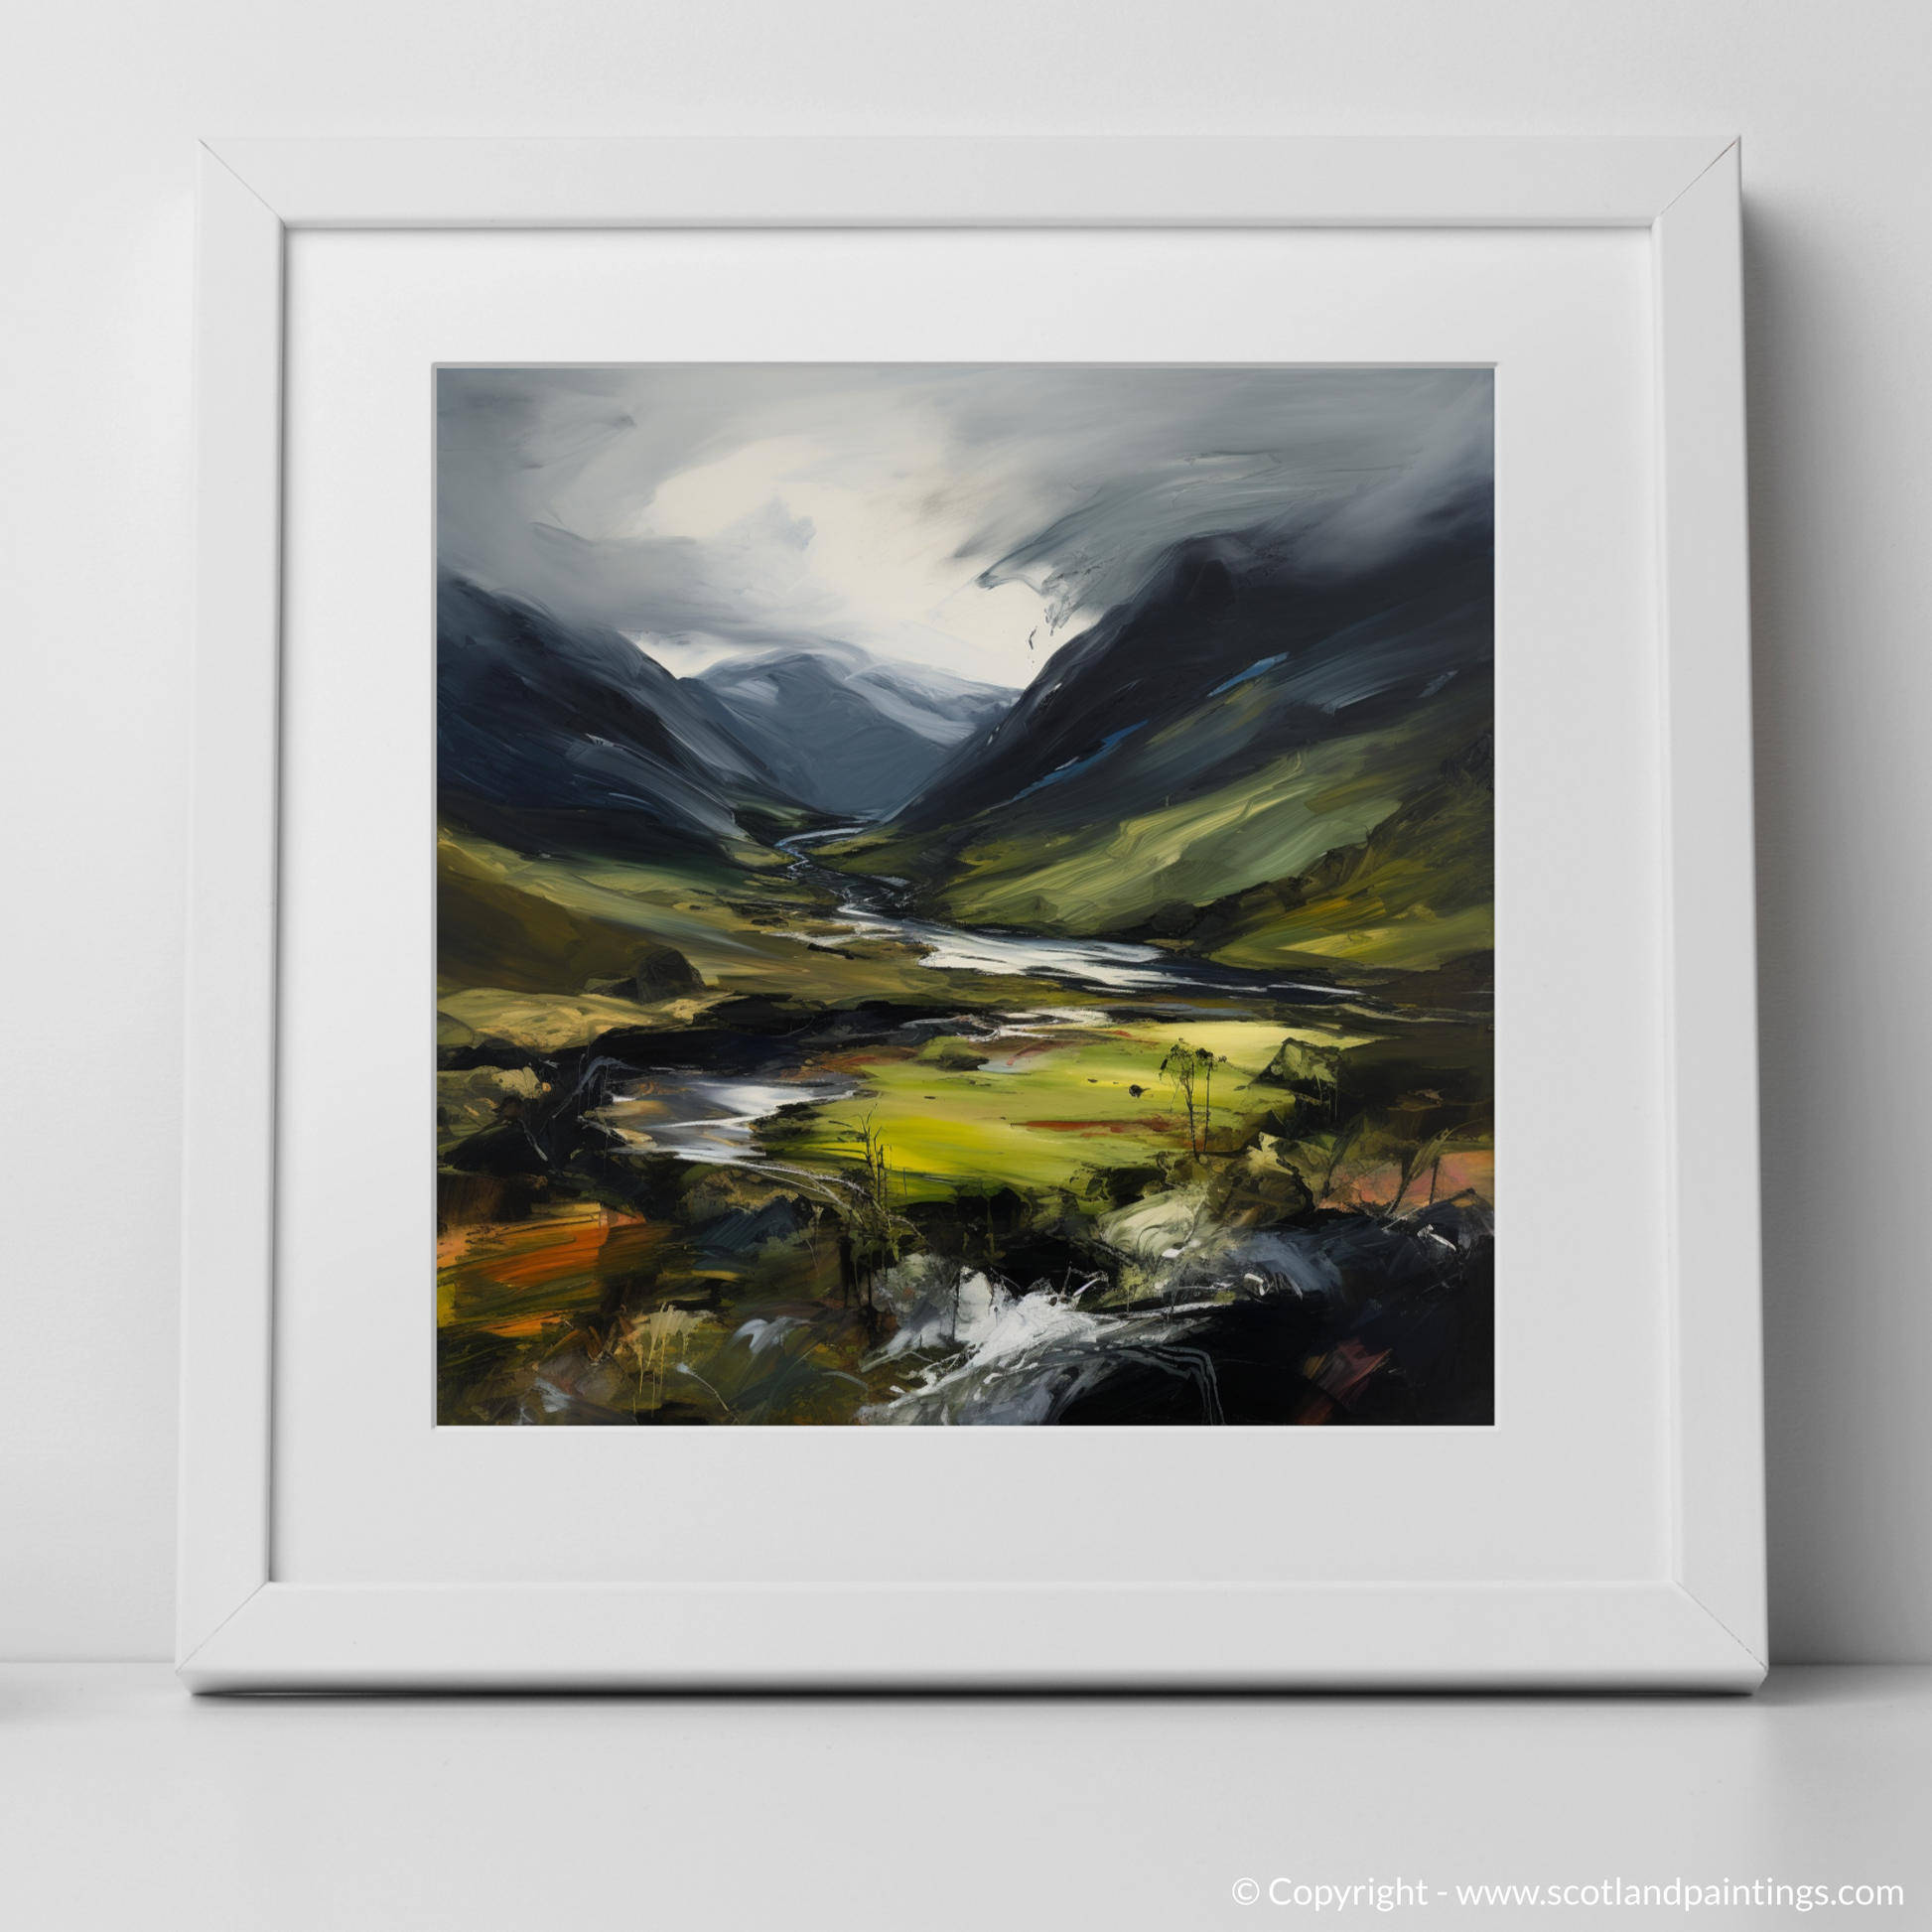 Art Print of Glen Strathfarrar, Highlands with a white frame